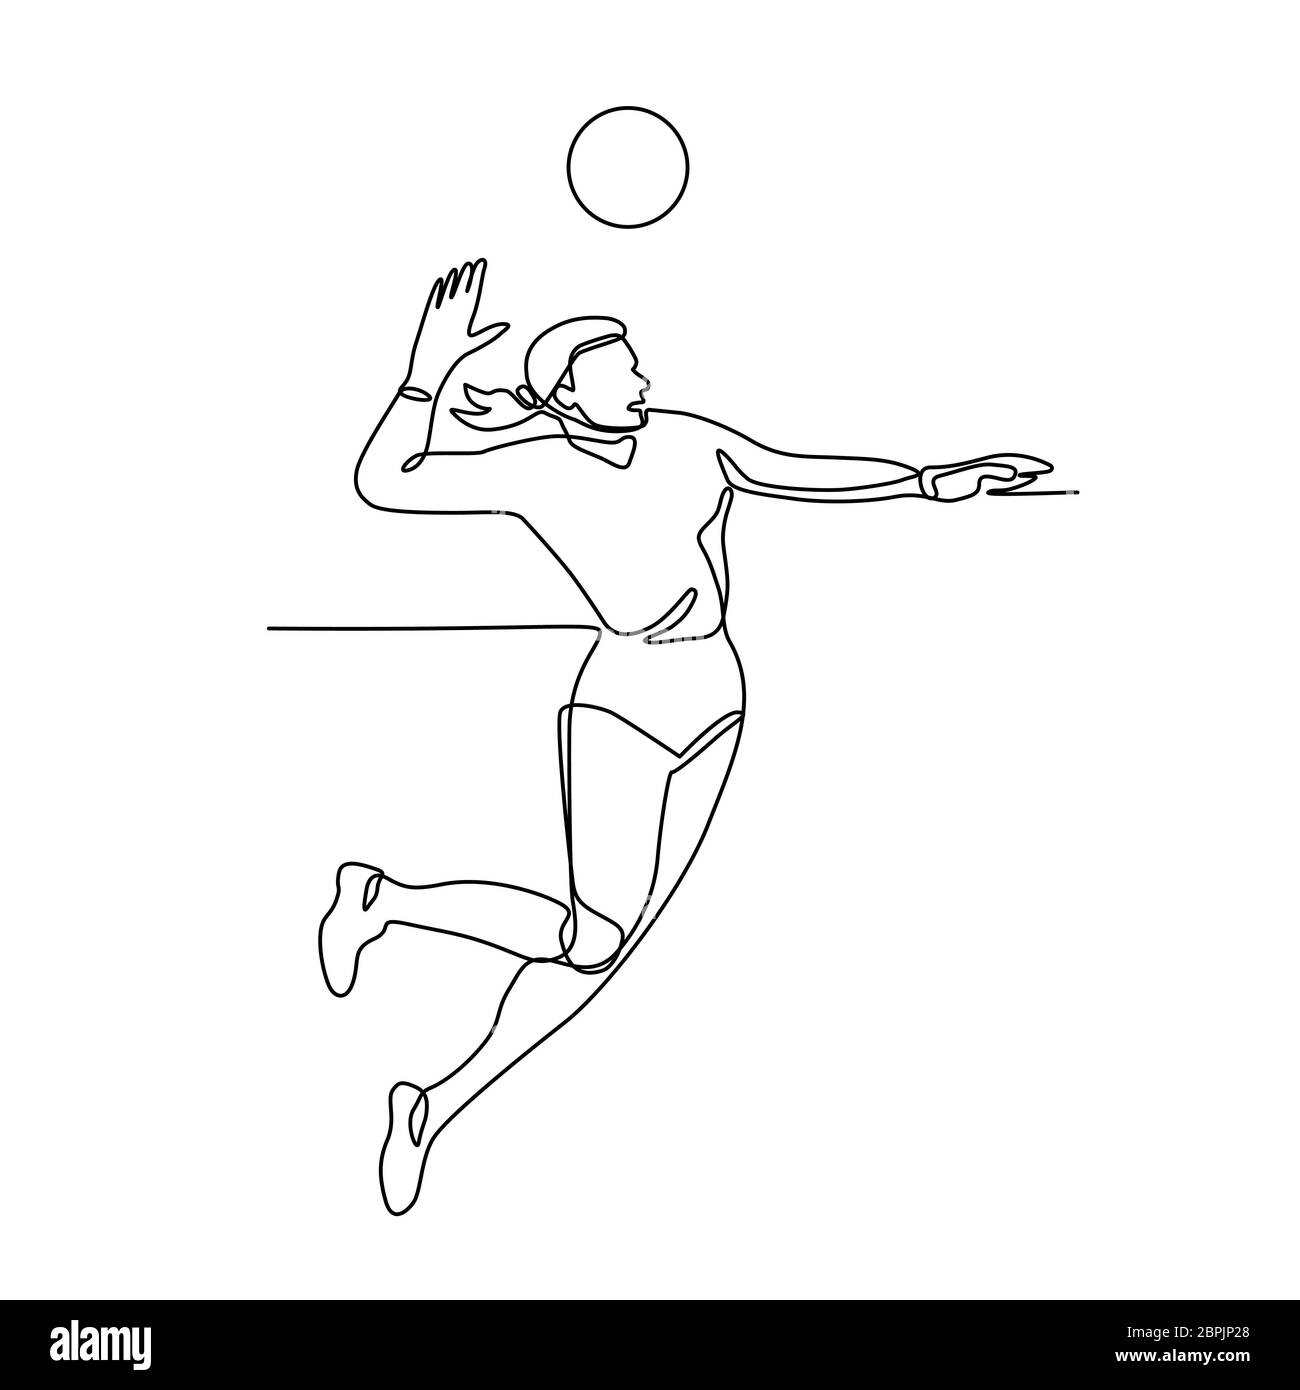 Linea continua illustrazione del giocatore di volleyball femminile di salto e spiking la palla visto dal lato fatto in bianco e nero in stile monolinea. Foto Stock